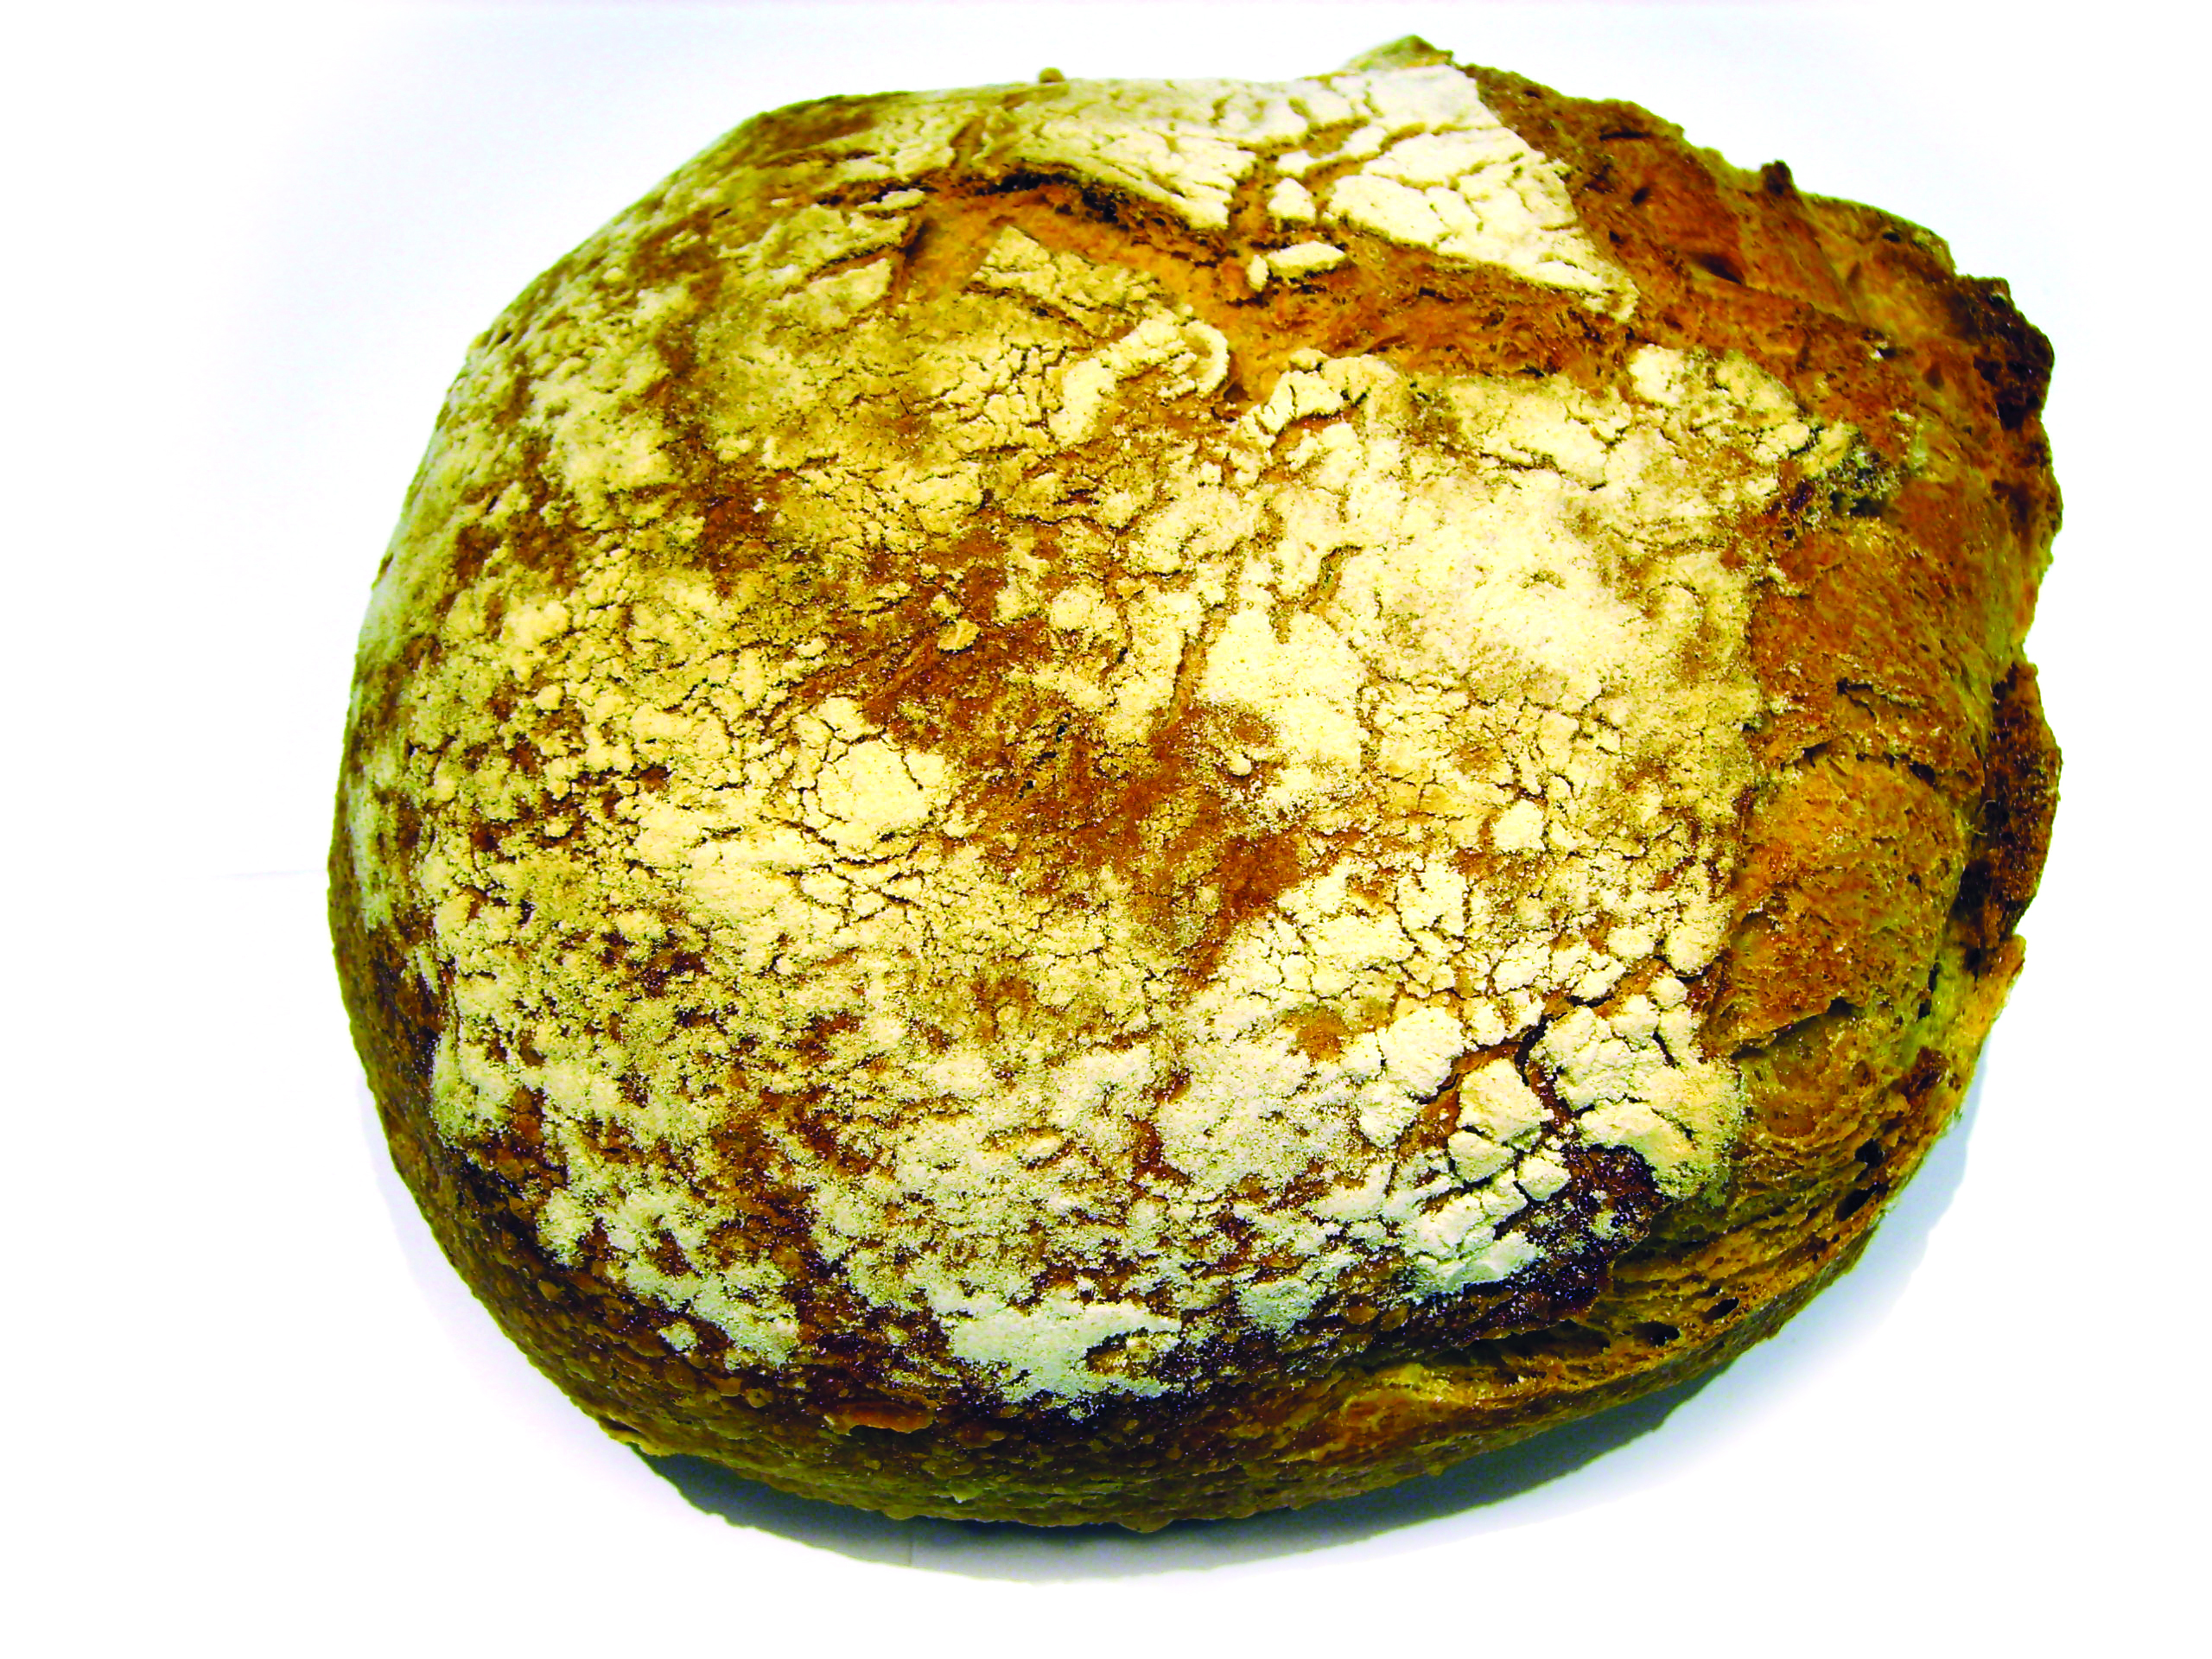 לחם מסופרמרקט בבנאלמדנה (ספרד)